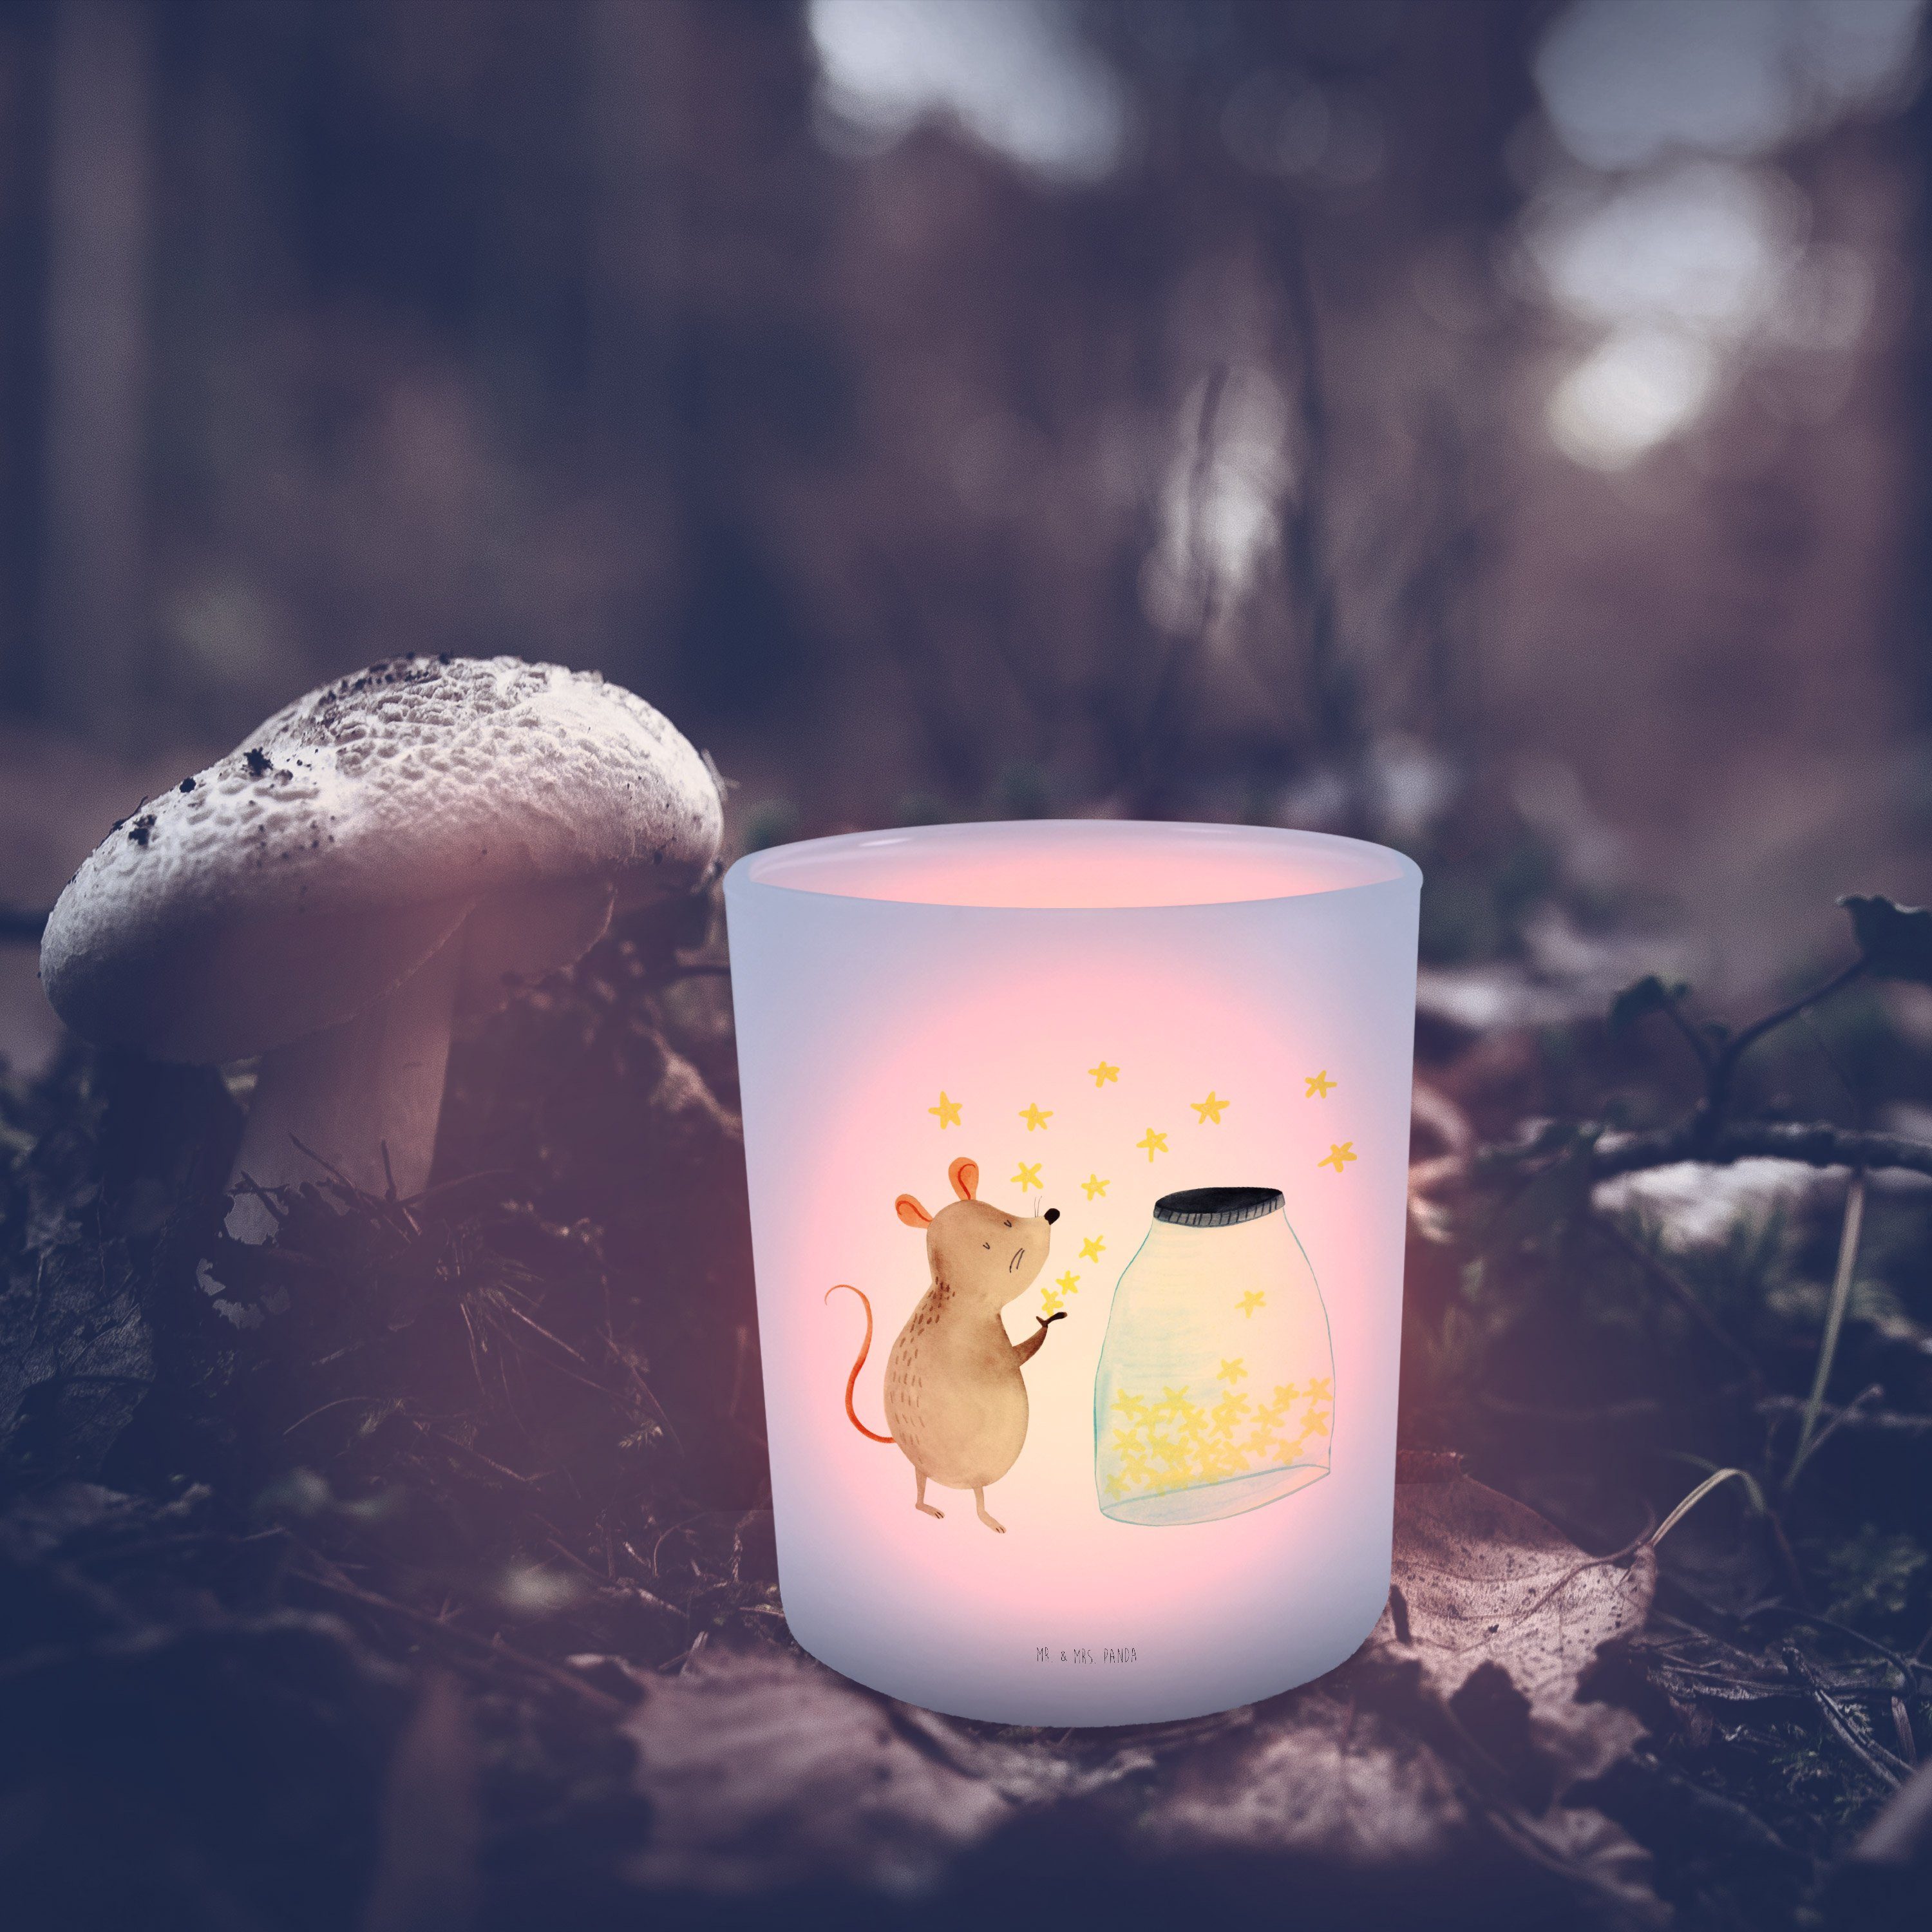 Mr. & Mrs. Panda Windlicht Maus Sterne - Transparent - Geschenk, Kerzenlicht, Tiere, Teelichtgla (1 St)